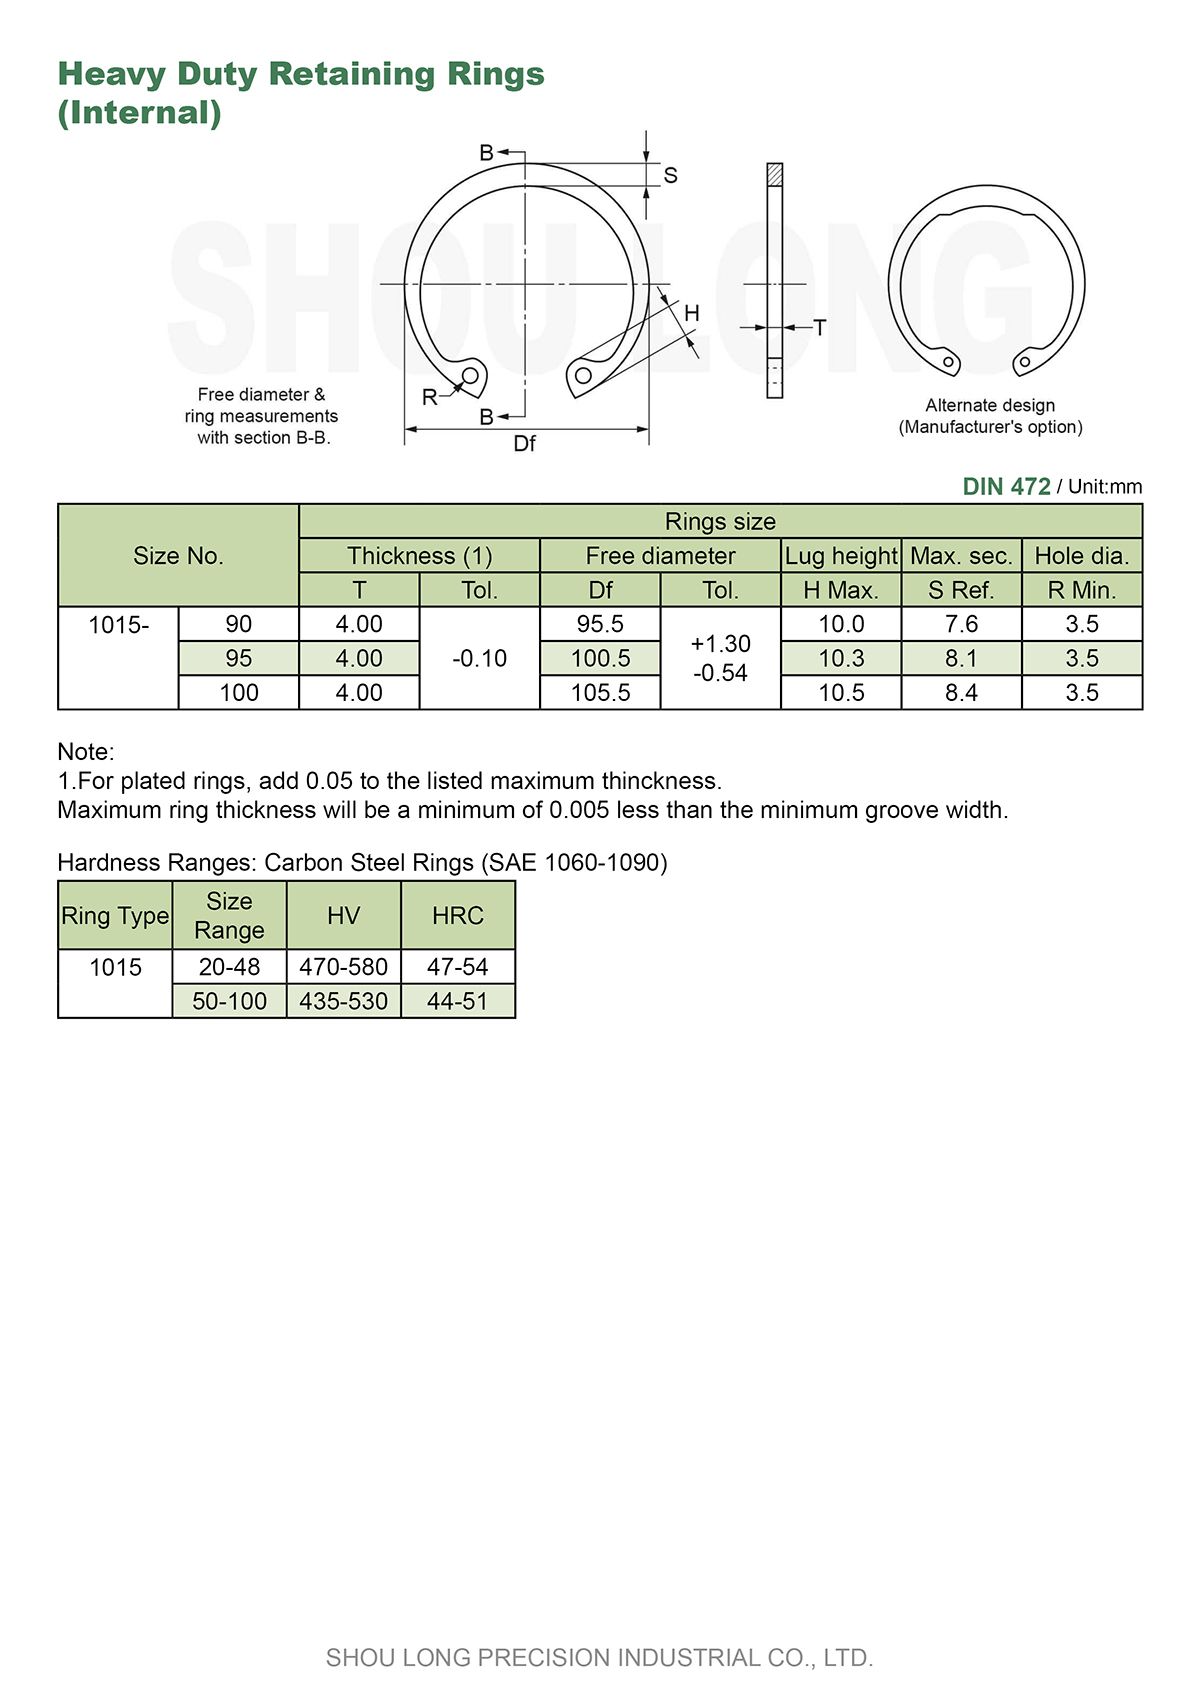 Spesifikasi Cincin Penahan Berat Metrik untuk Lubang DIN472-2